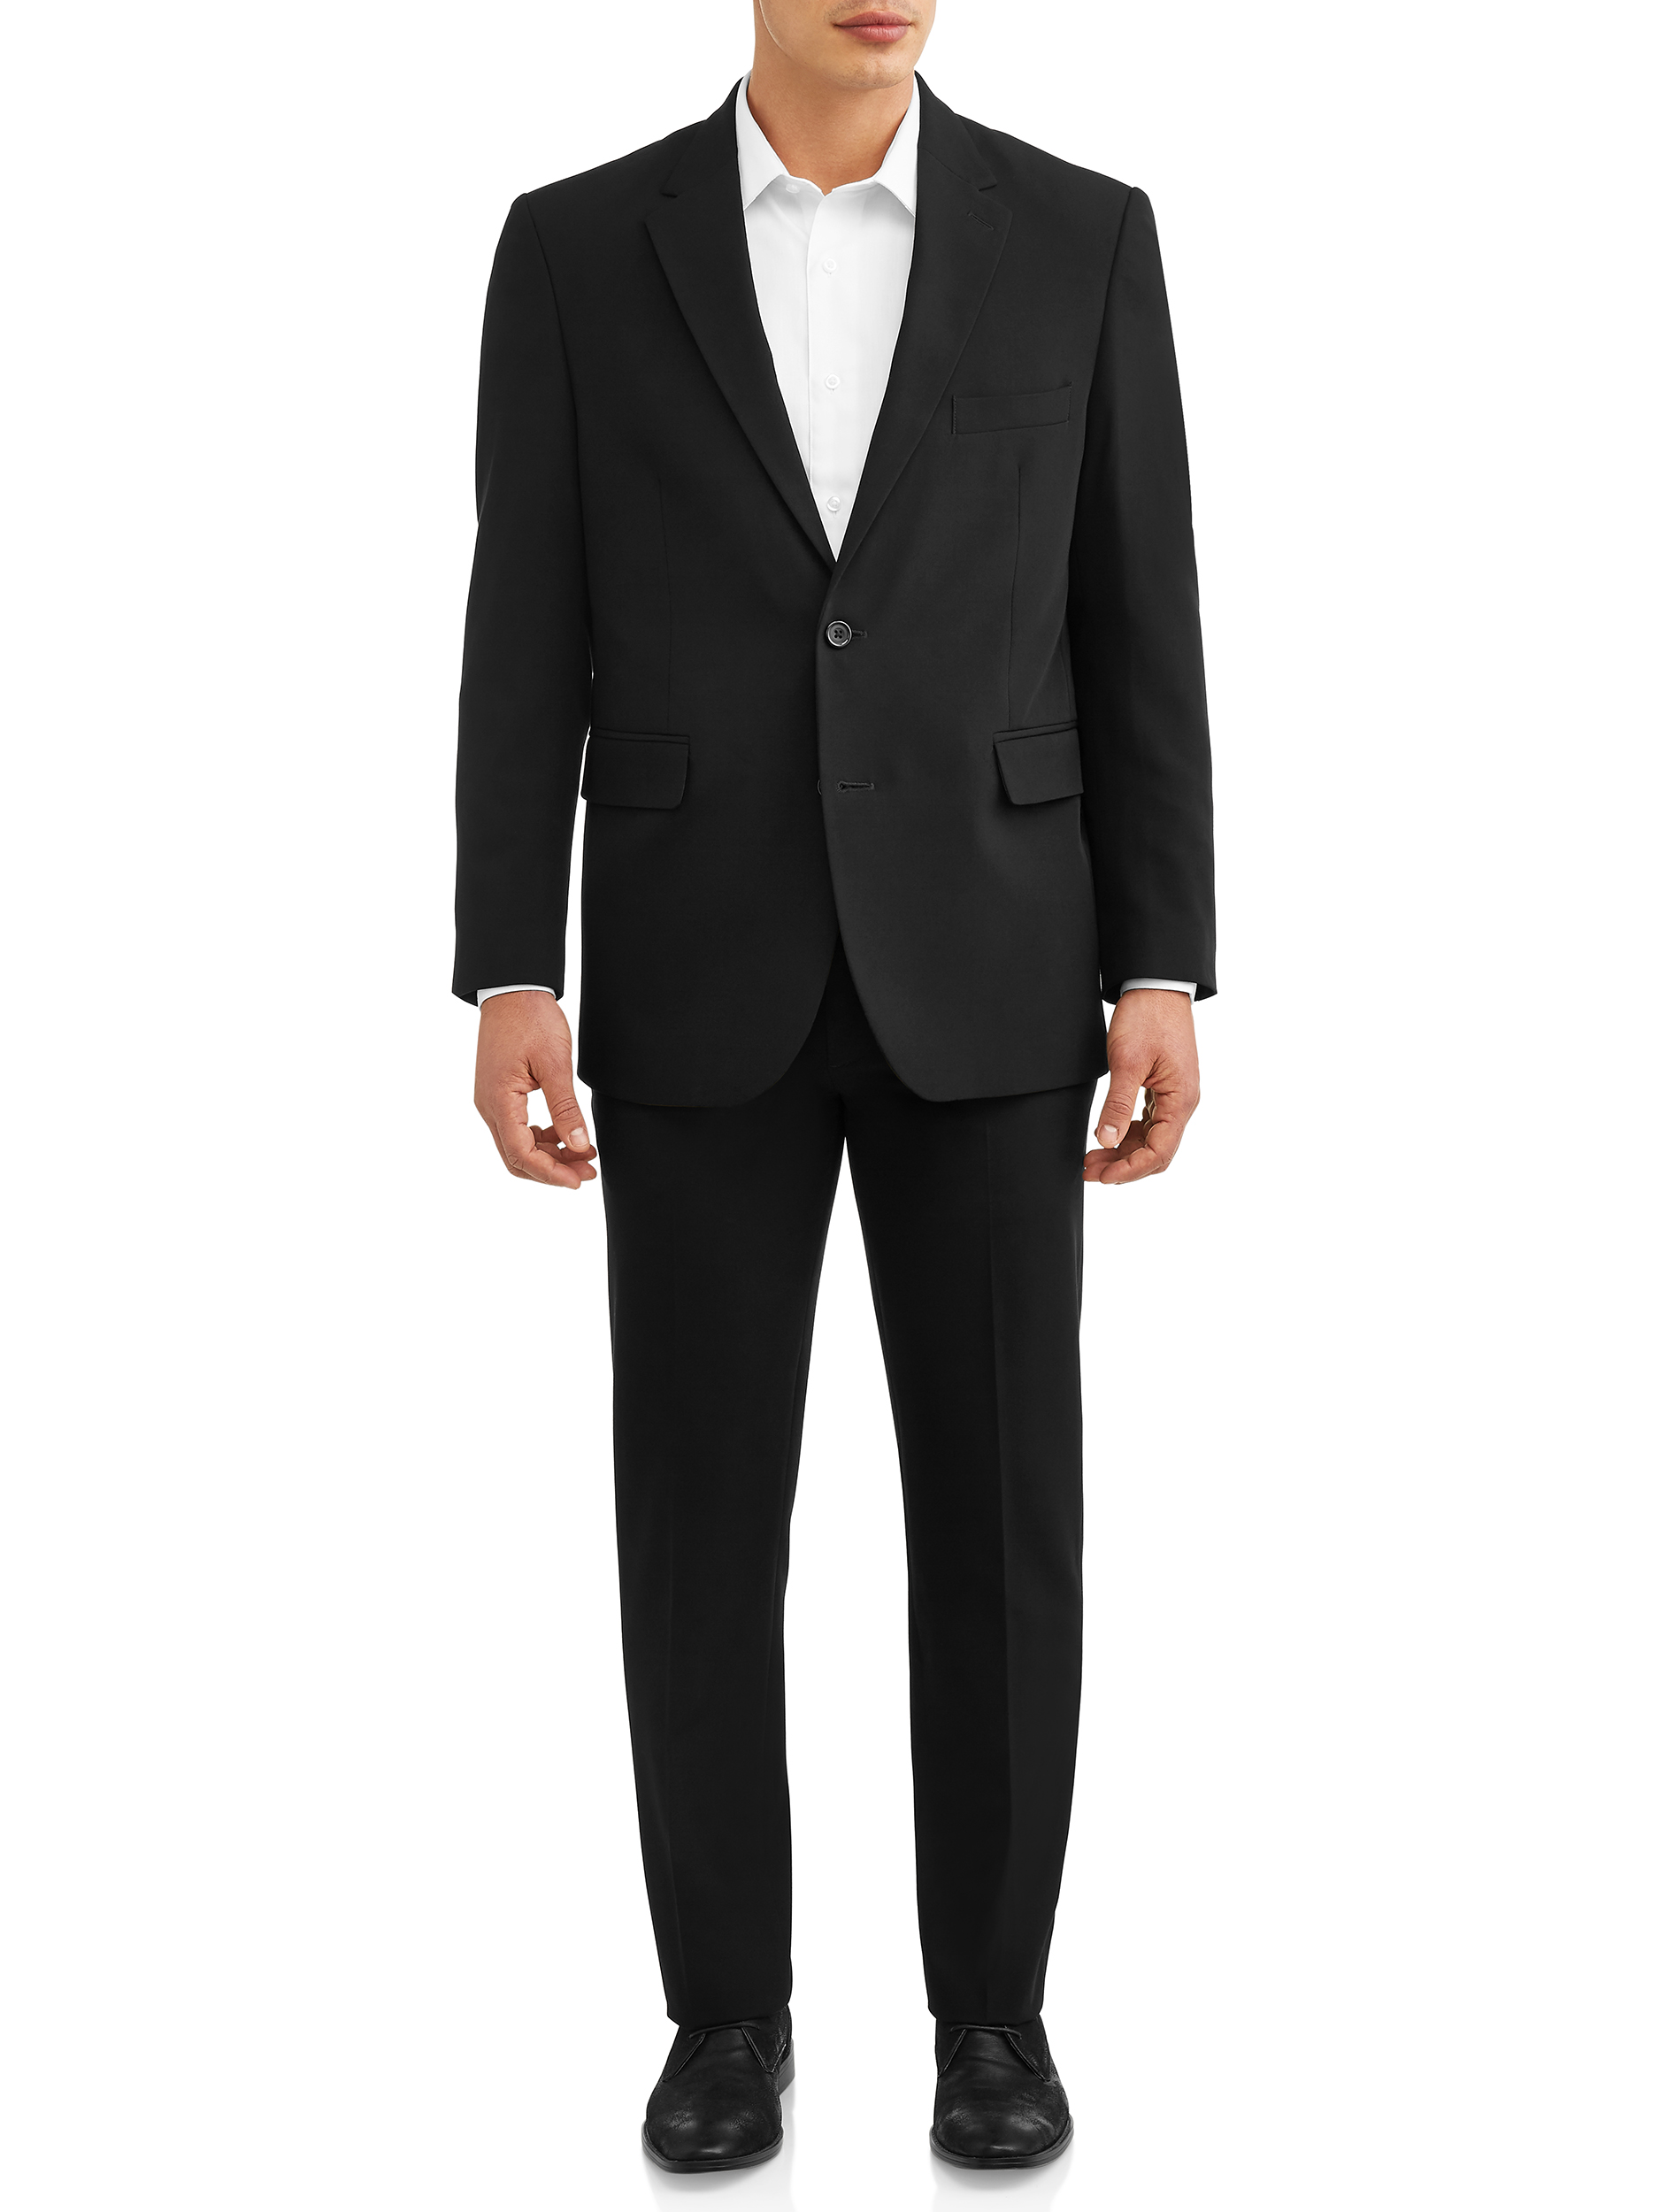 George Men's Premium Comfort Stretch Suit Jacket - image 2 of 5